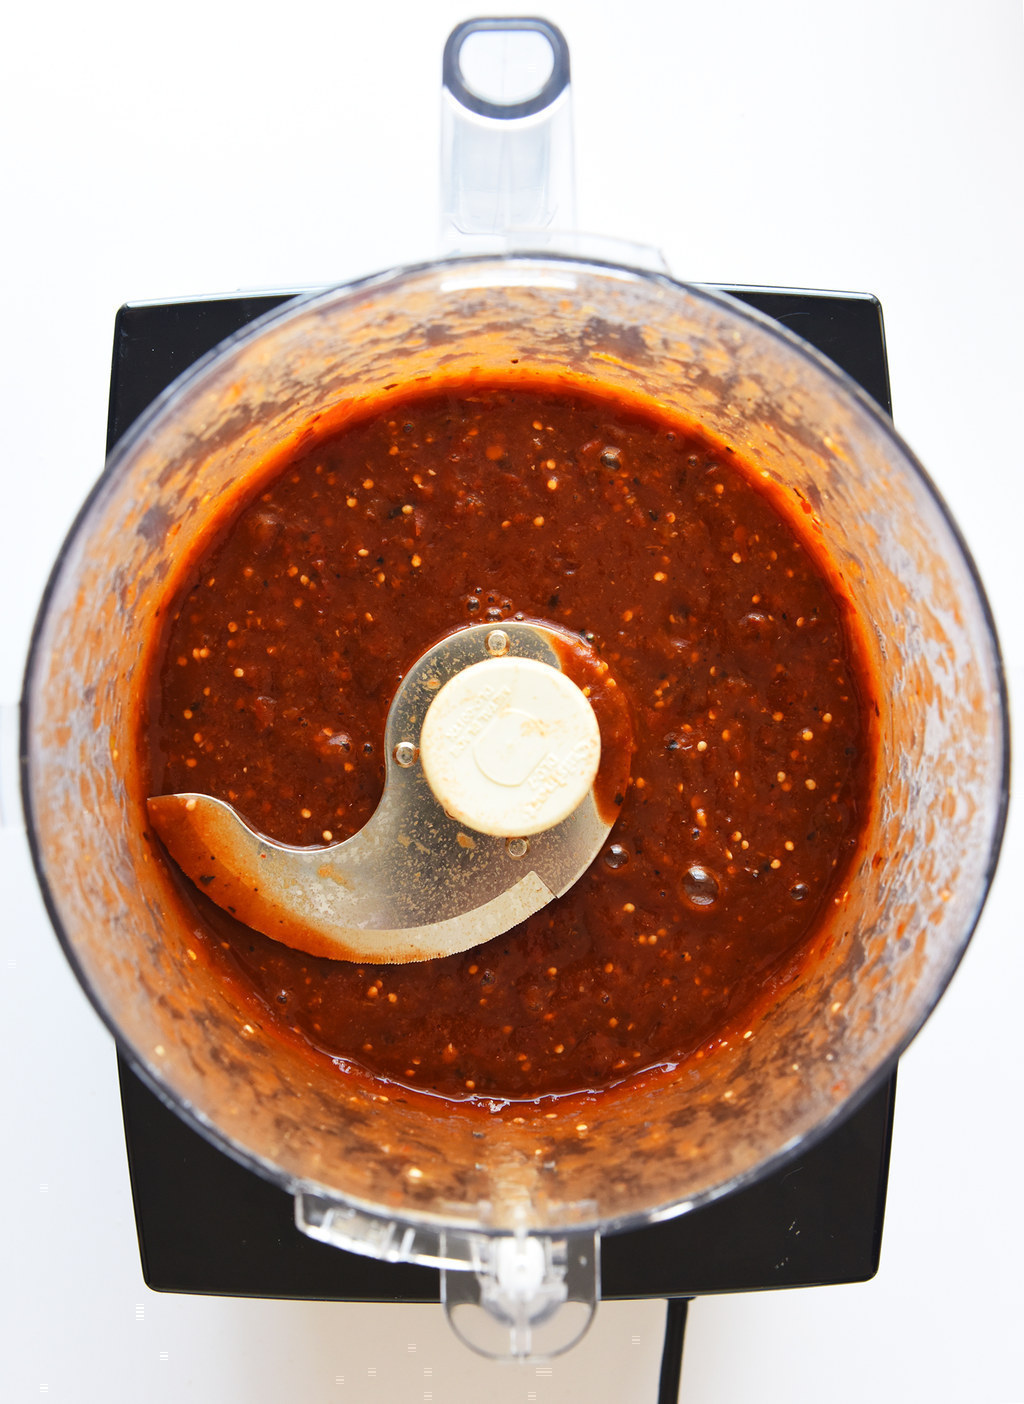 tomatillo red chili salsa